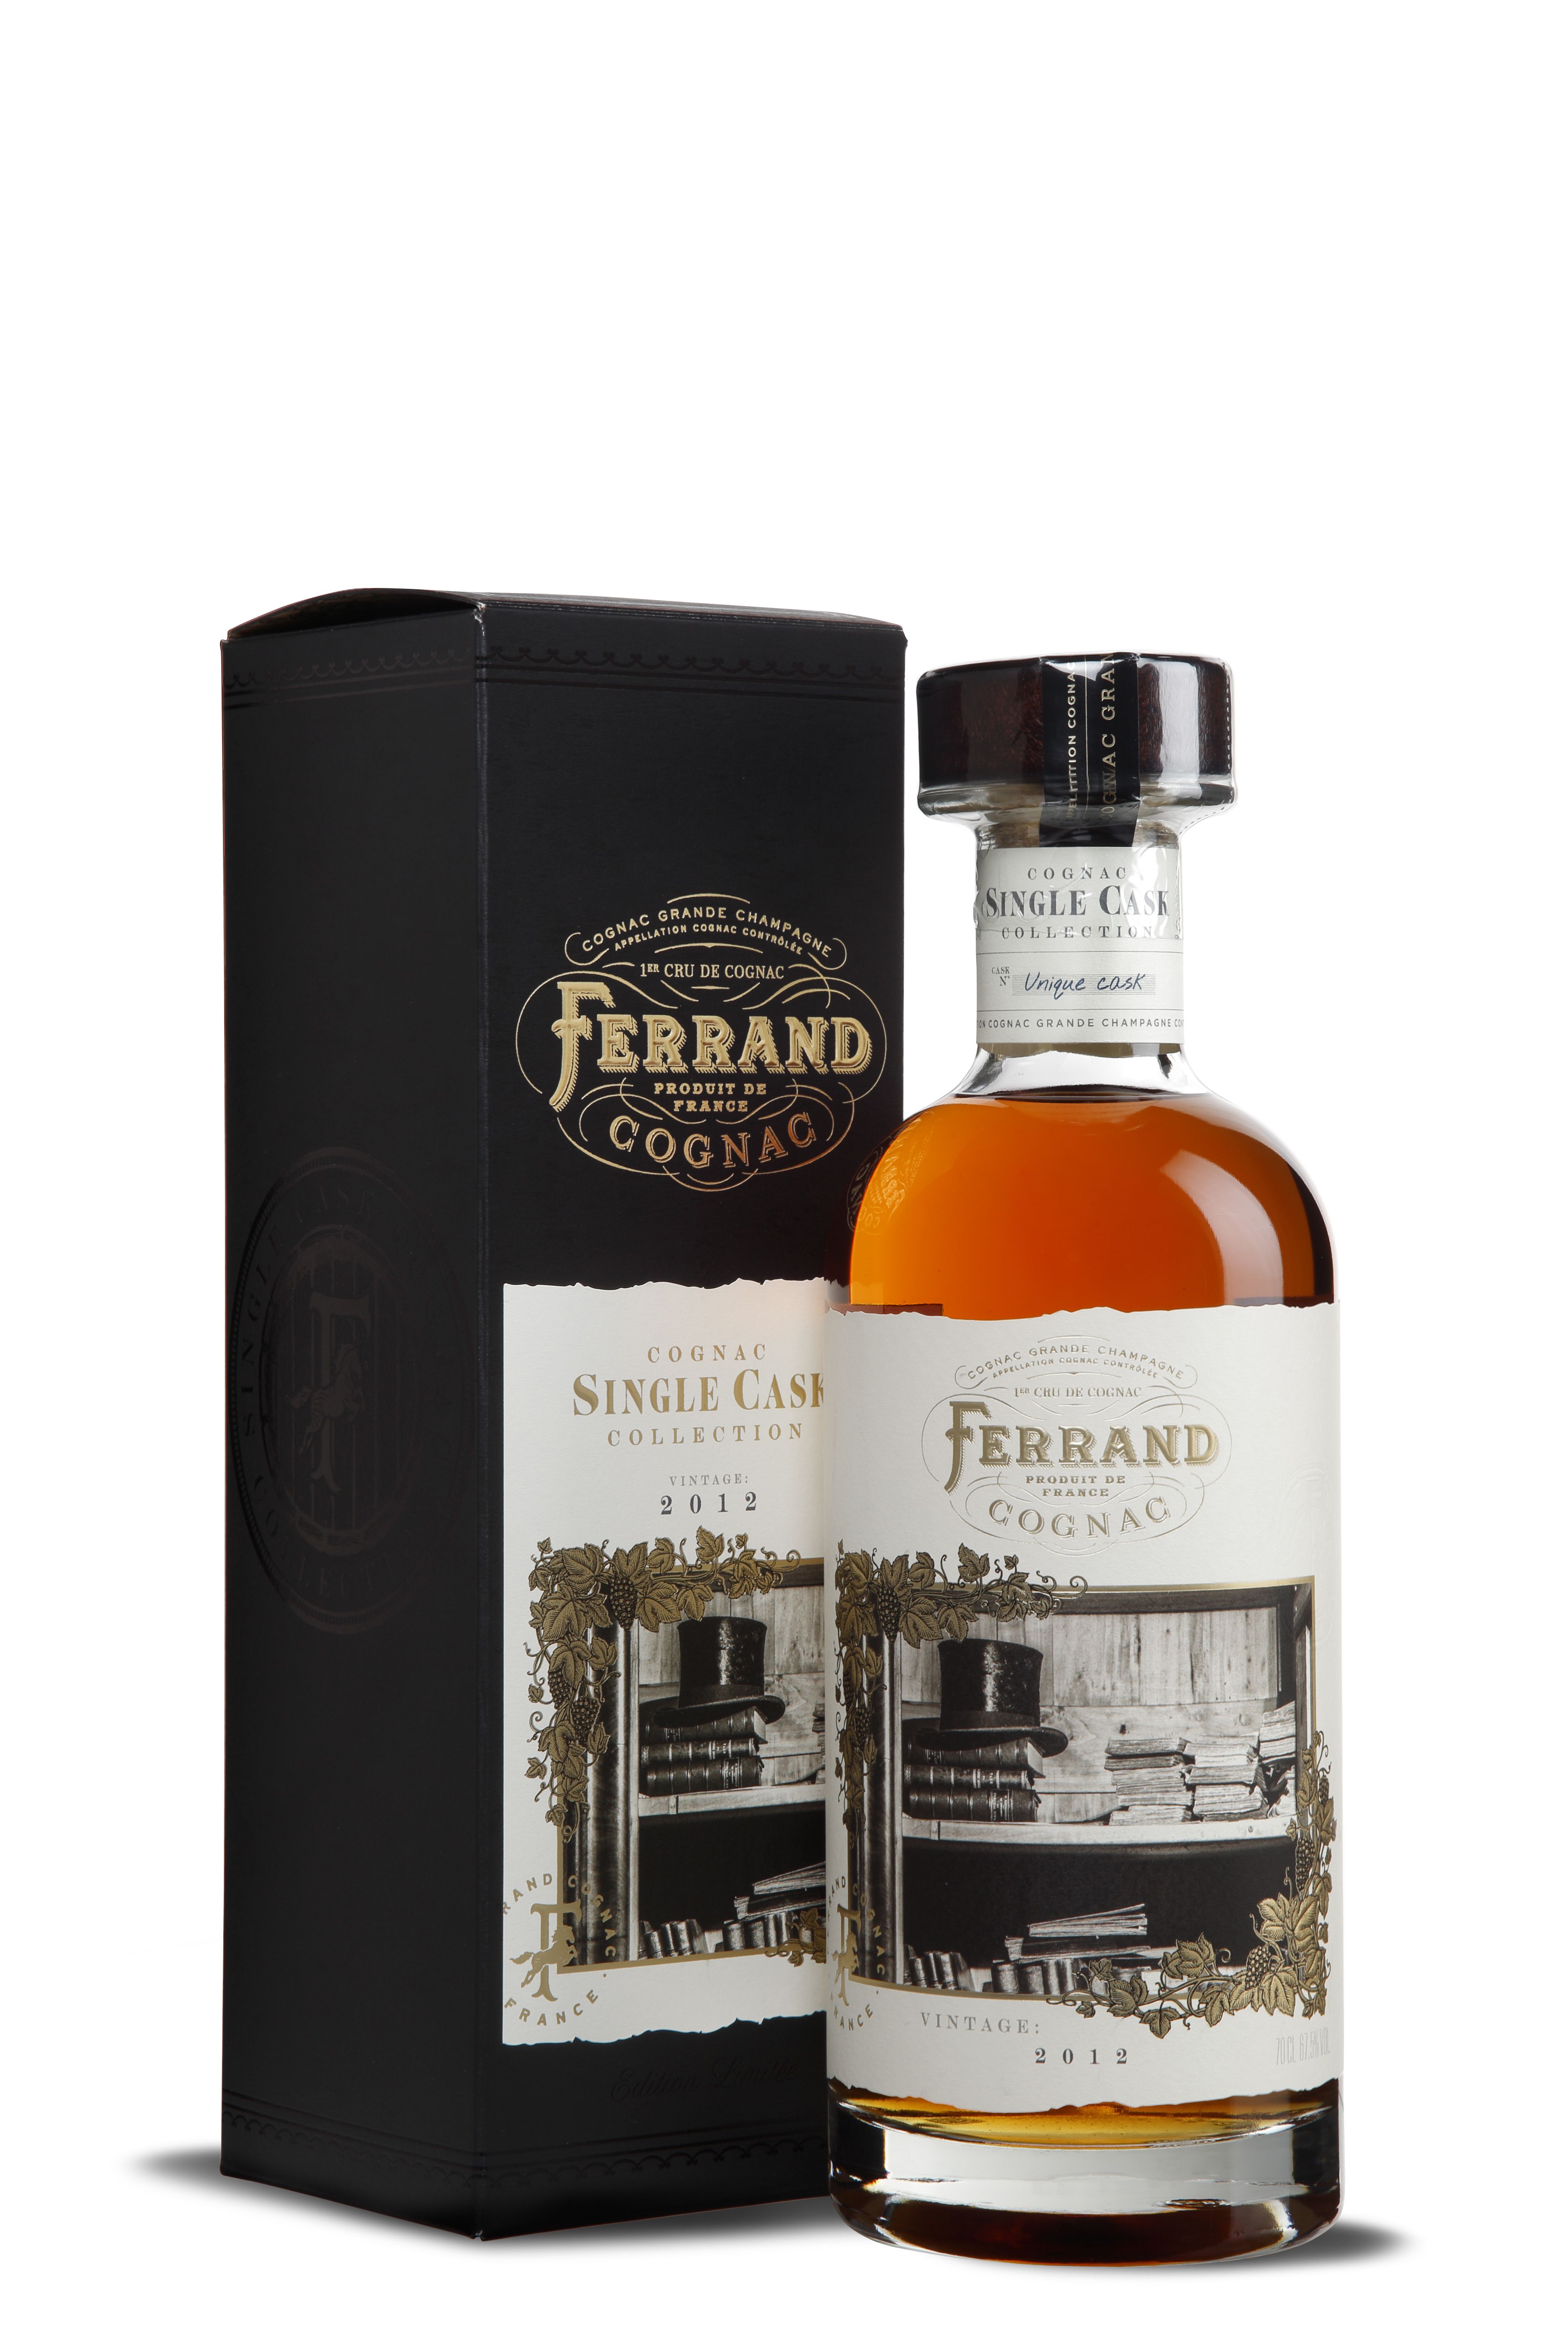 Ferrand 2012 Cognac Single Cask Collection